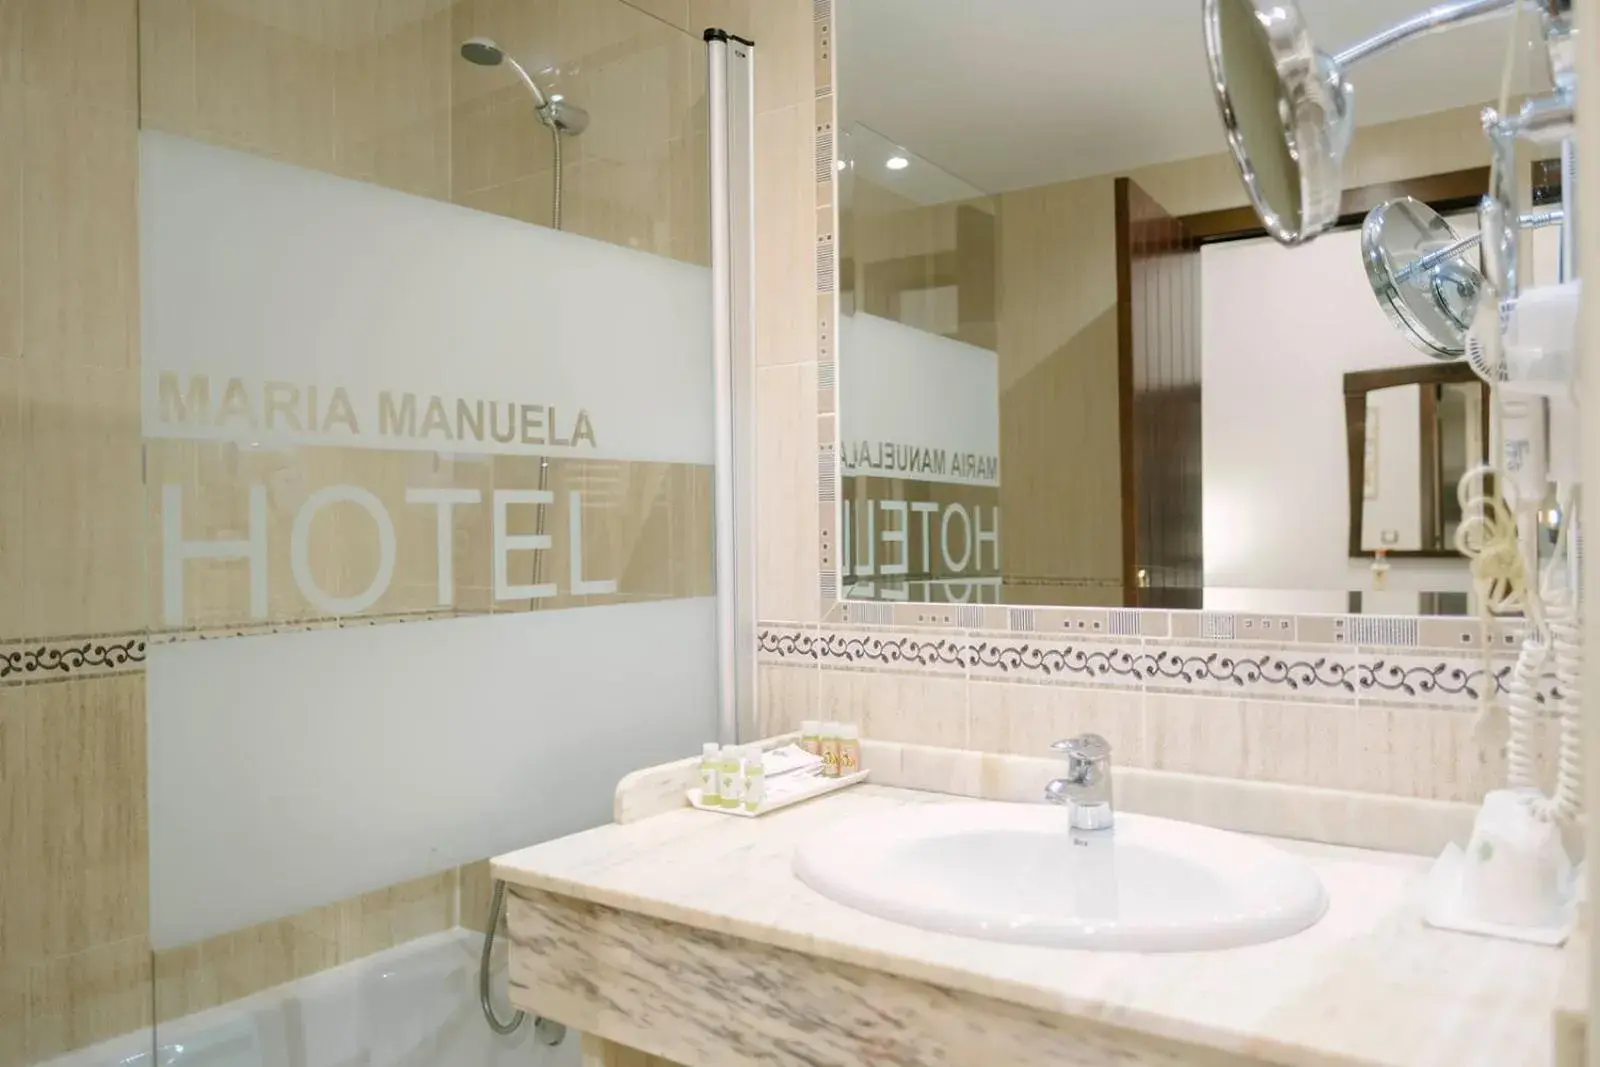 Bathroom in Hotel & Spa María Manuela